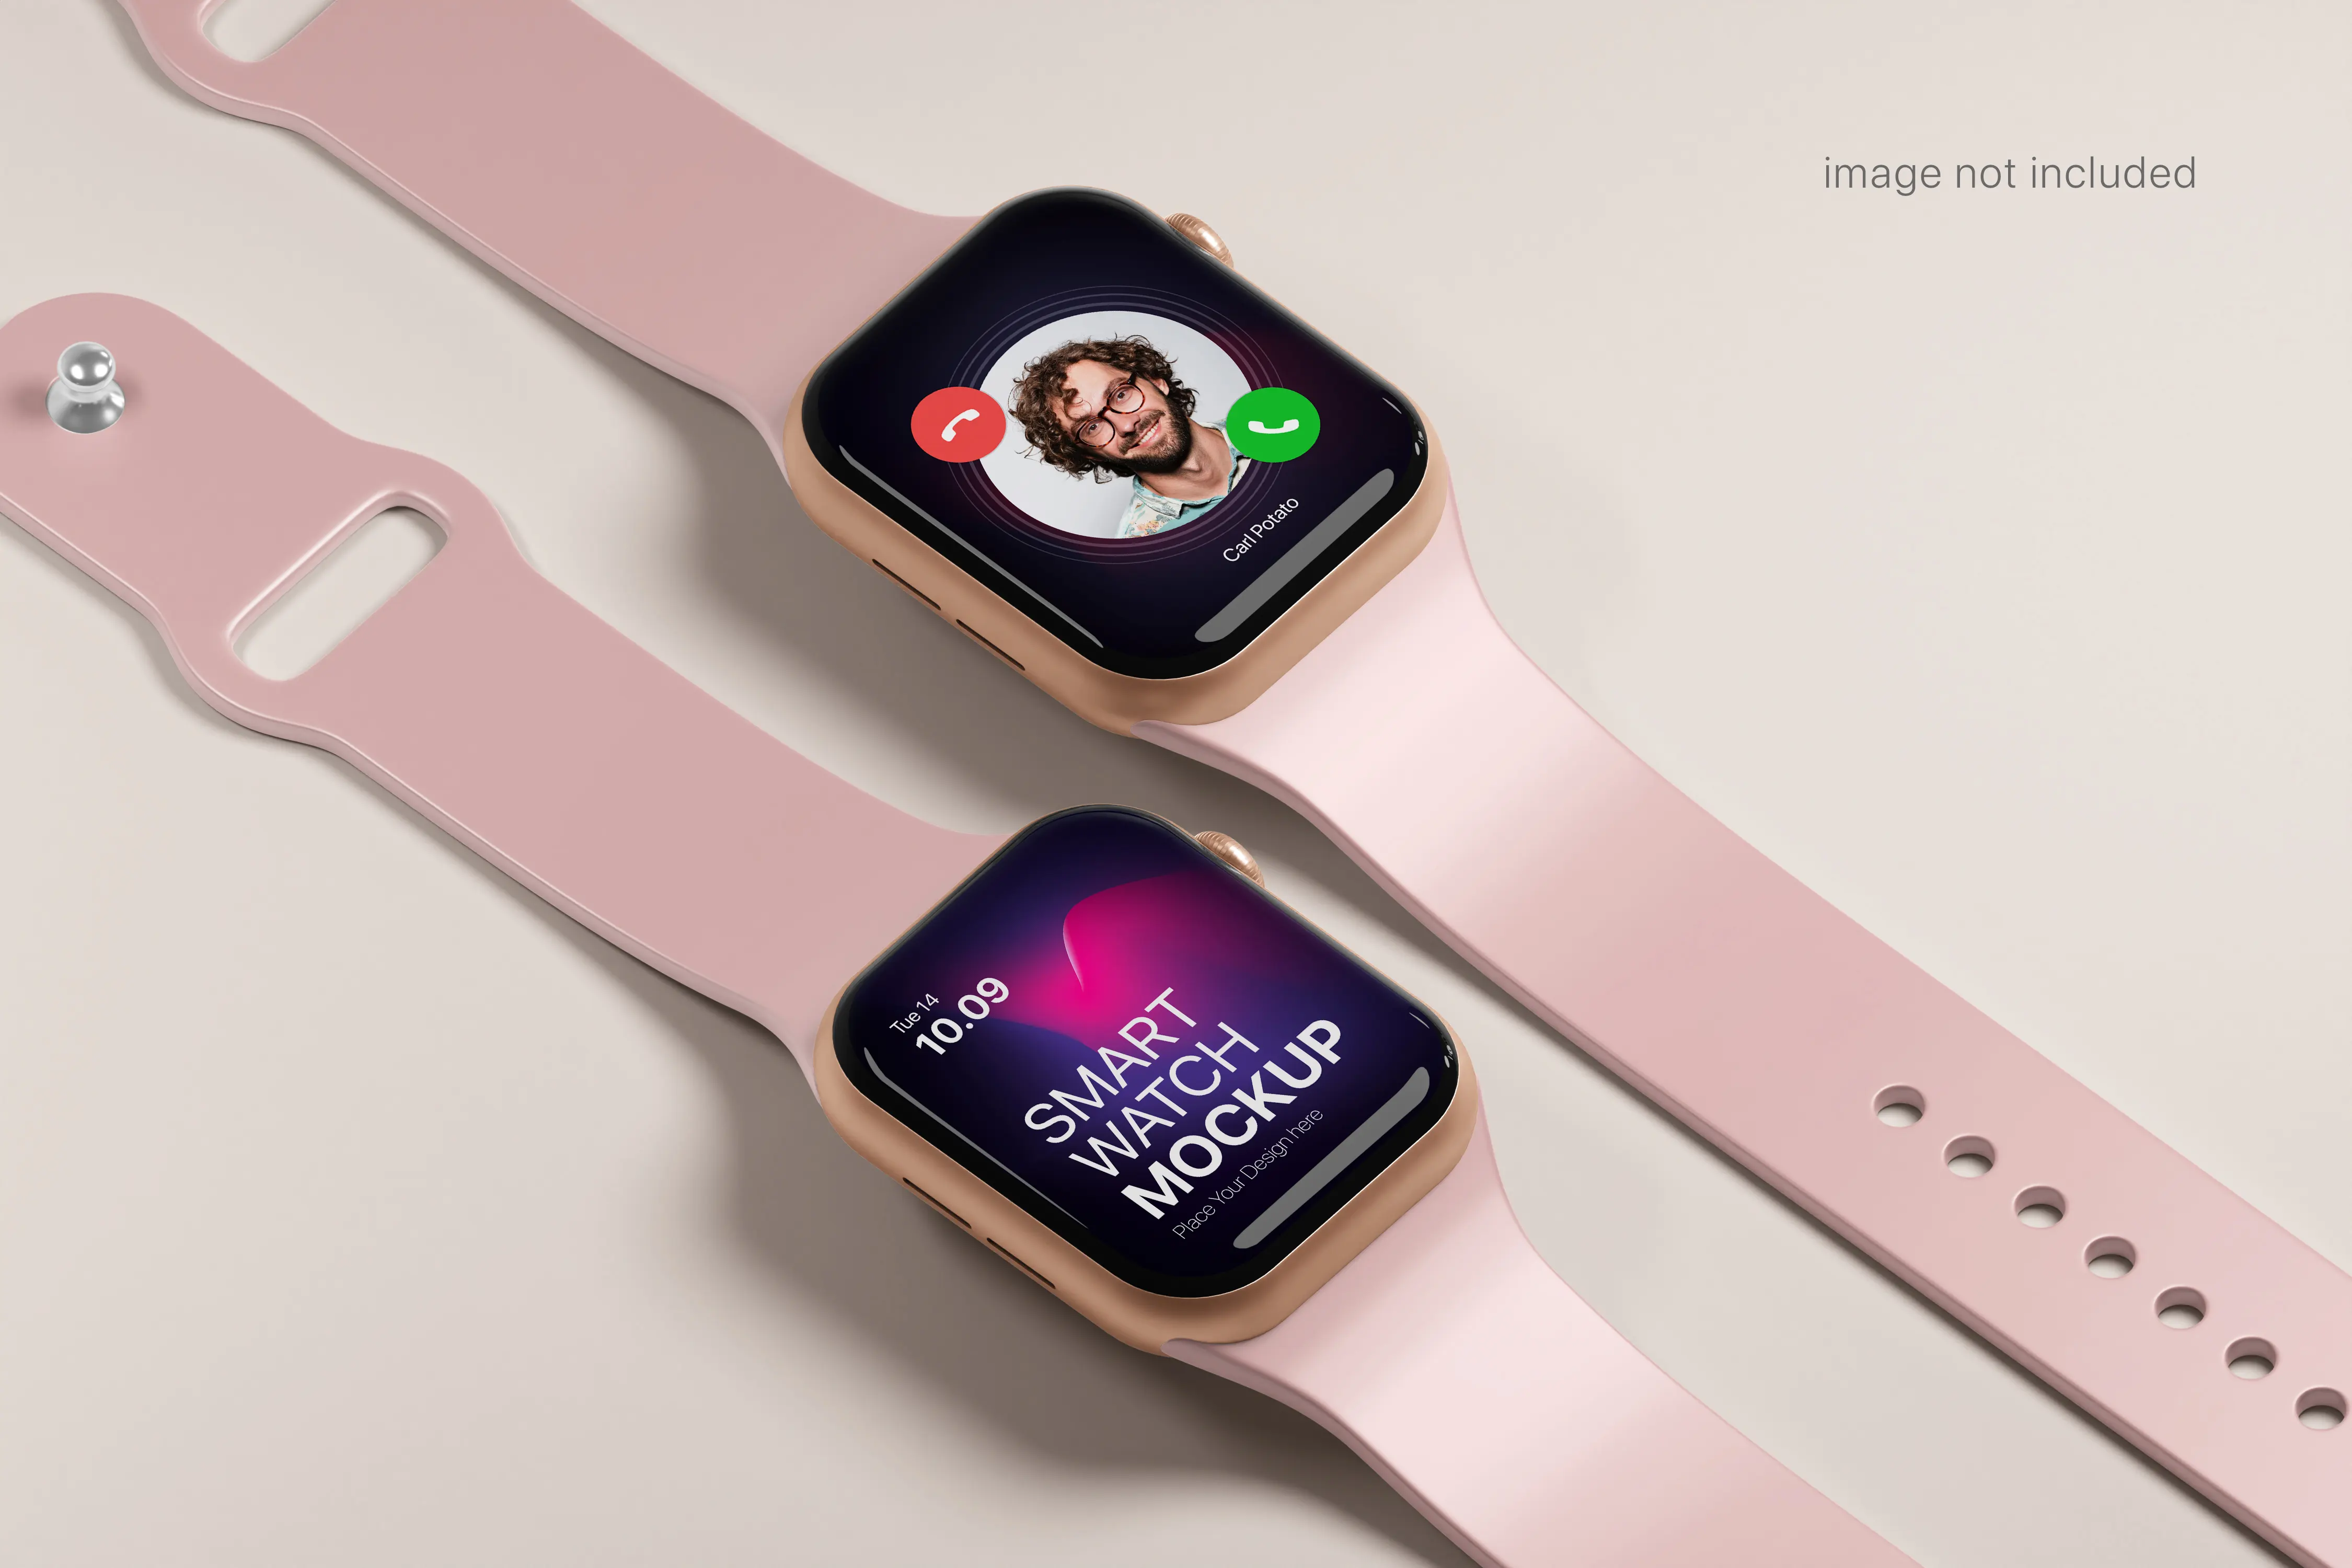 موکاپ - موکاپ اپل واچ پک شماره یک - apple watch